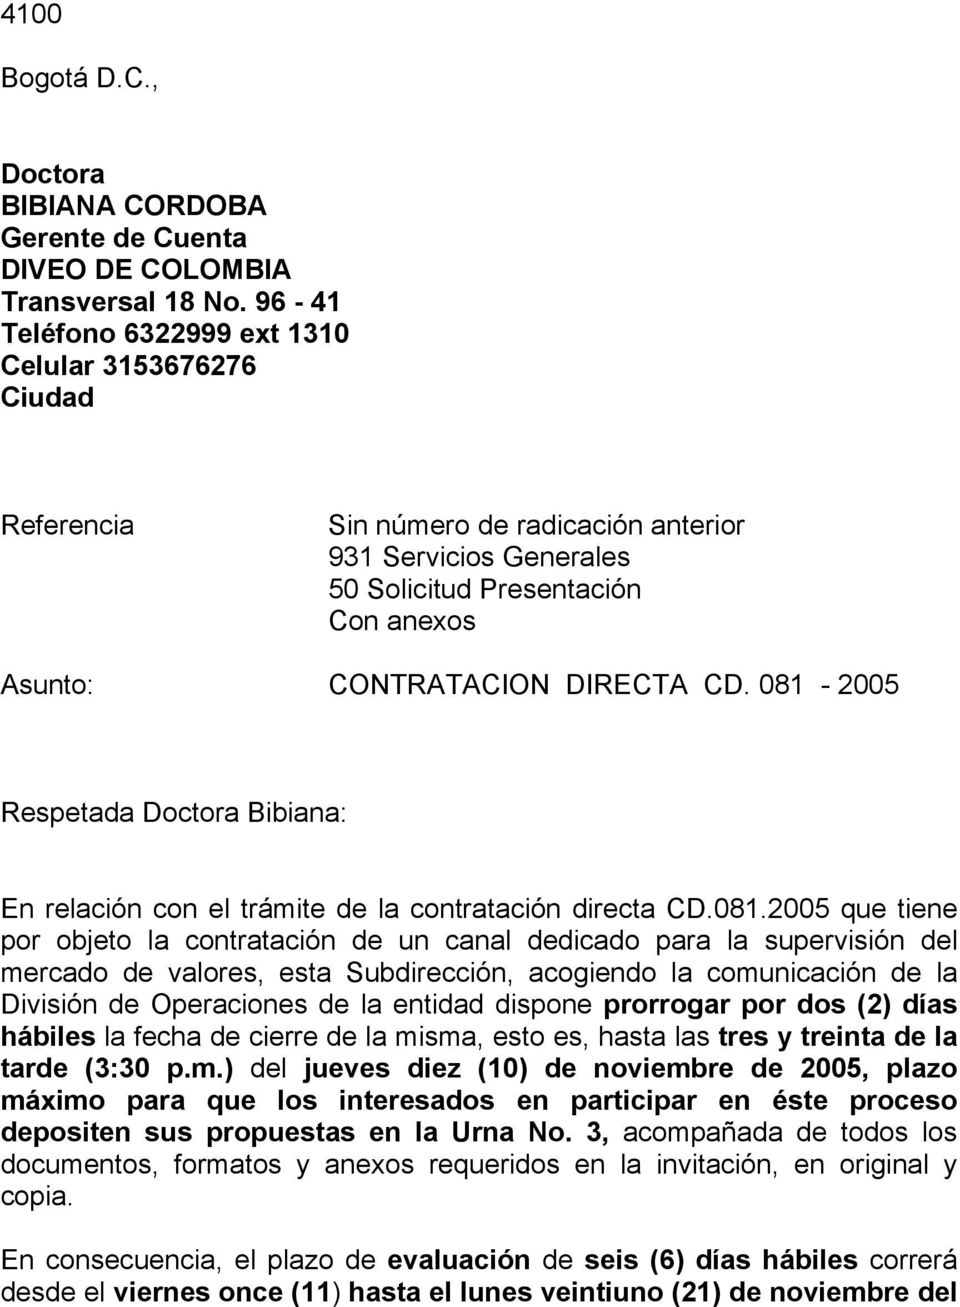 081-2005 Respetada Doctora Bibiana: En relación con el trámite de la contratación directa CD.081.2005 que tiene por objeto la contratación de un canal dedicado para la supervisión del mercado de